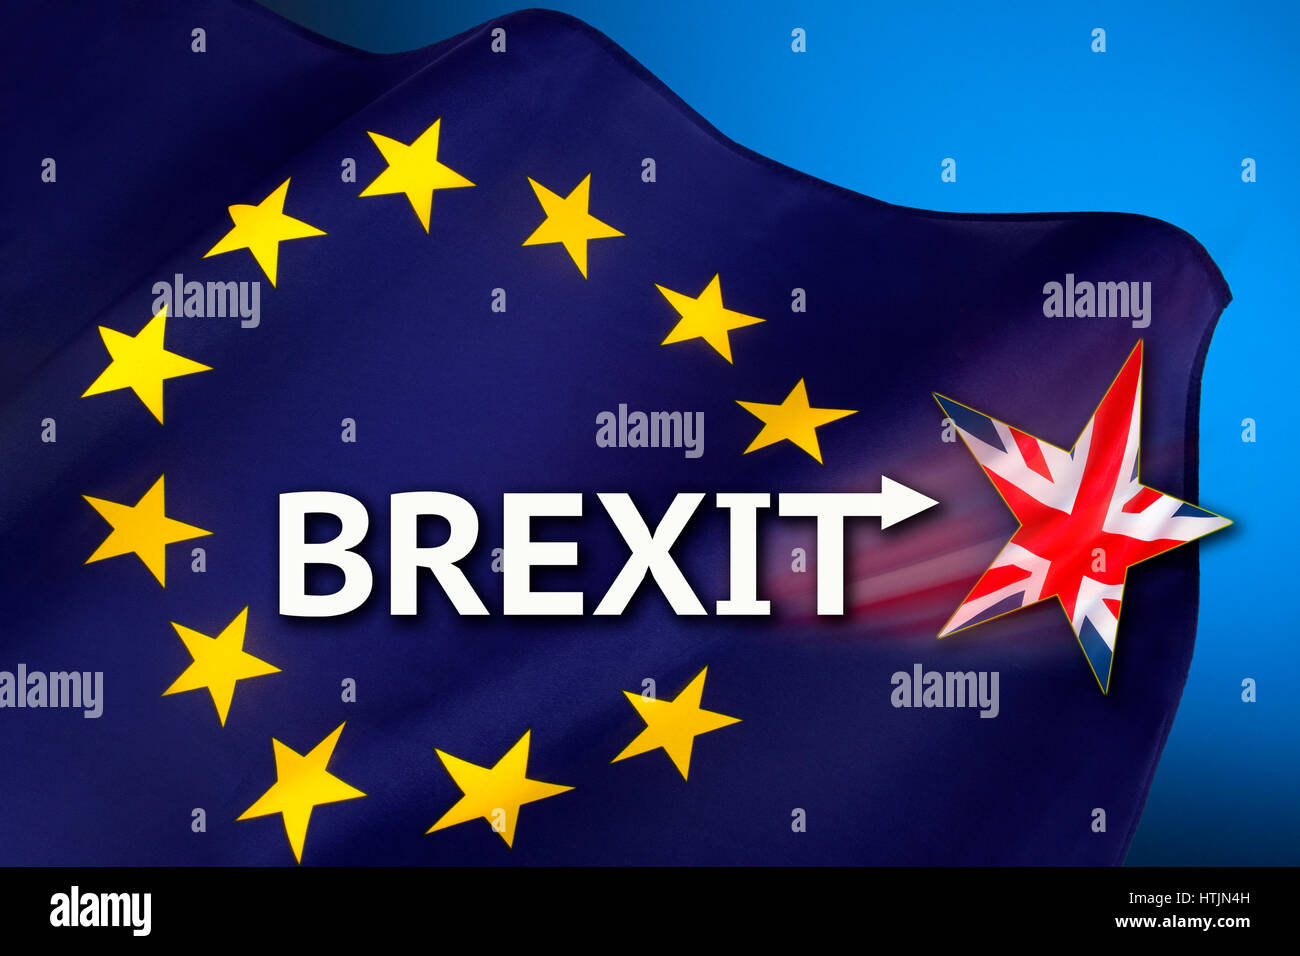 BREXIT - British ritiro dall'Unione europea. Foto Stock